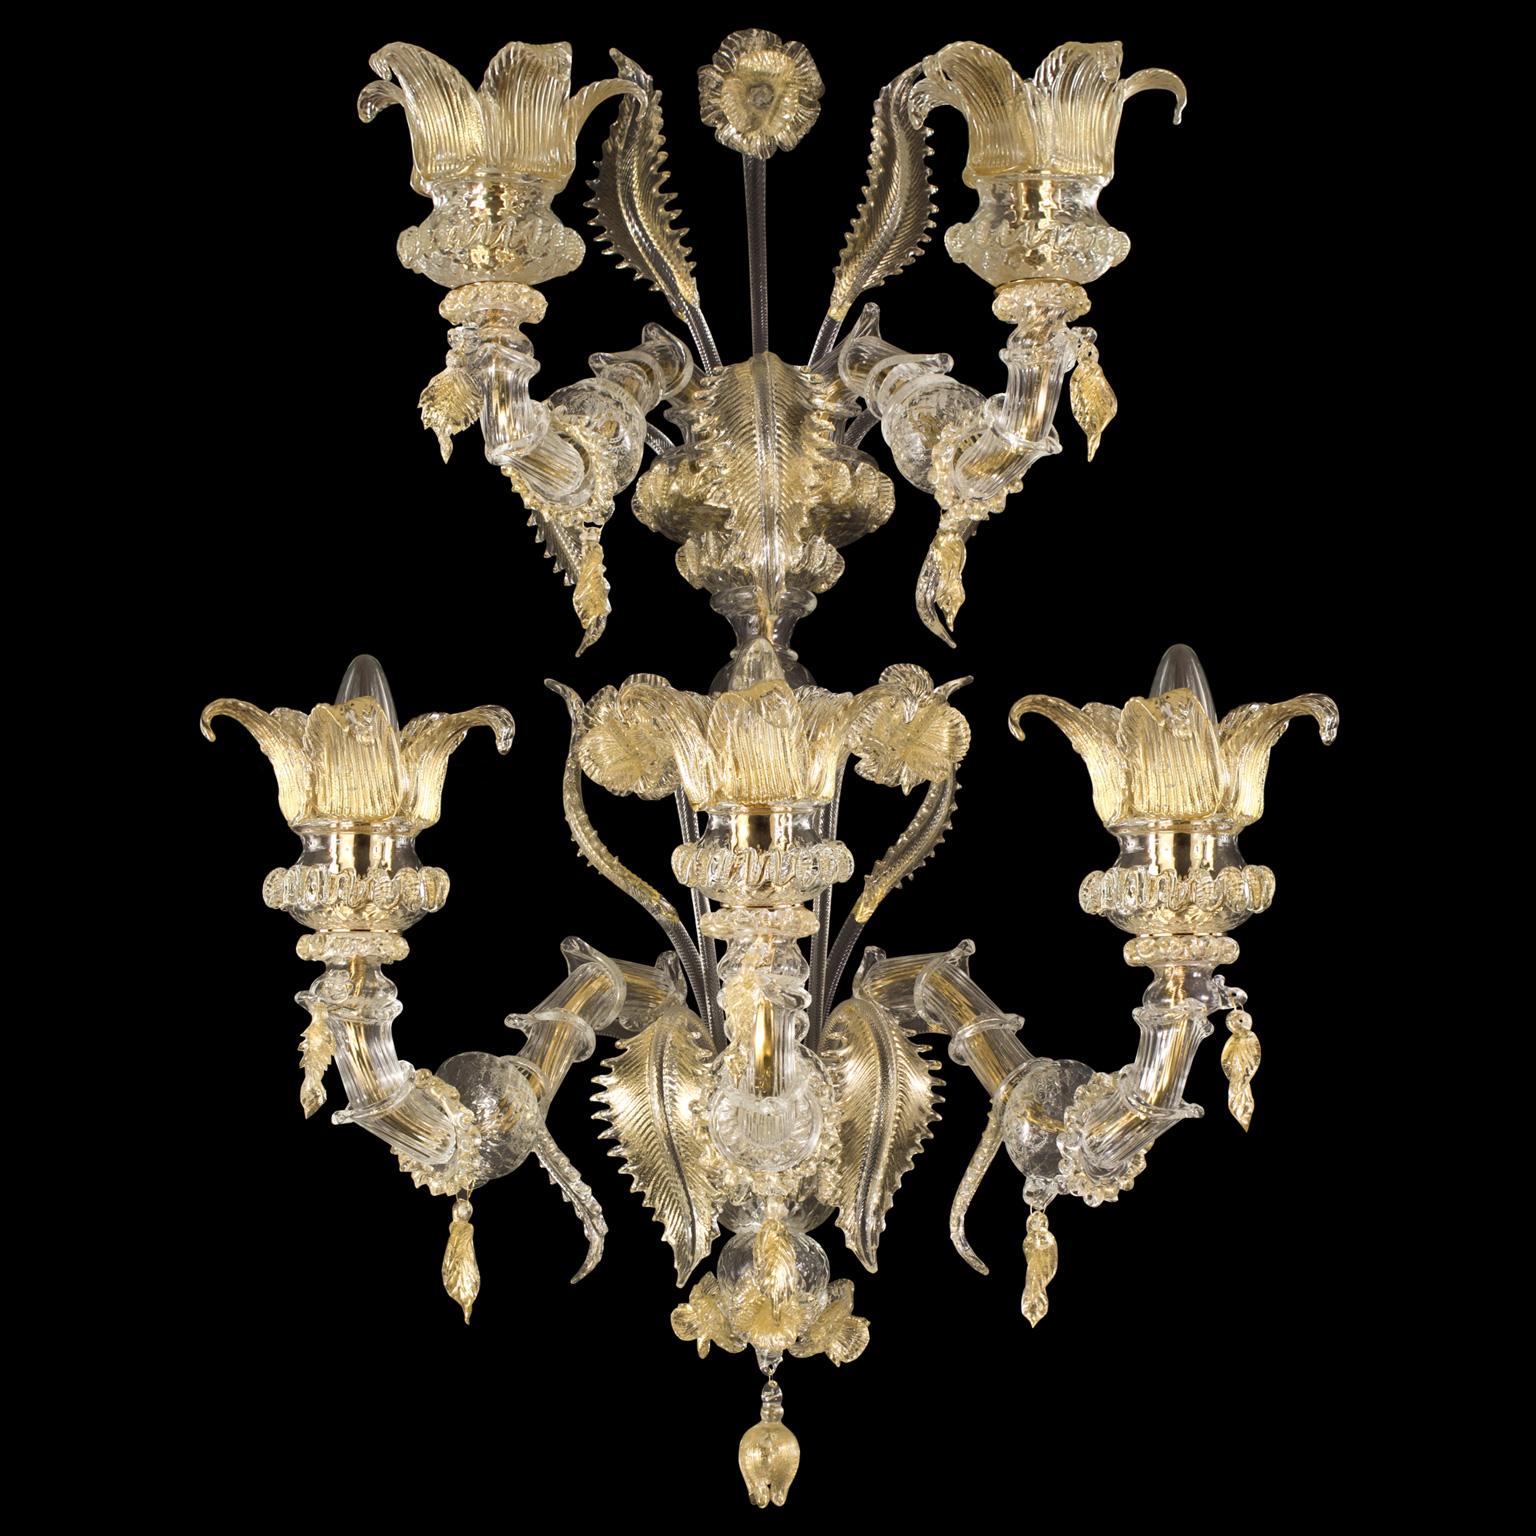 L'applique Regale en verre de Murano avec 3+2 bras sur 2 niveaux différents est une œuvre d'éclairage romantique, inspirée des halls luxueux des bâtiments vénitiens sur le Canal Grande.
Les couleurs, les décorations florales, les bras Rezzonico,